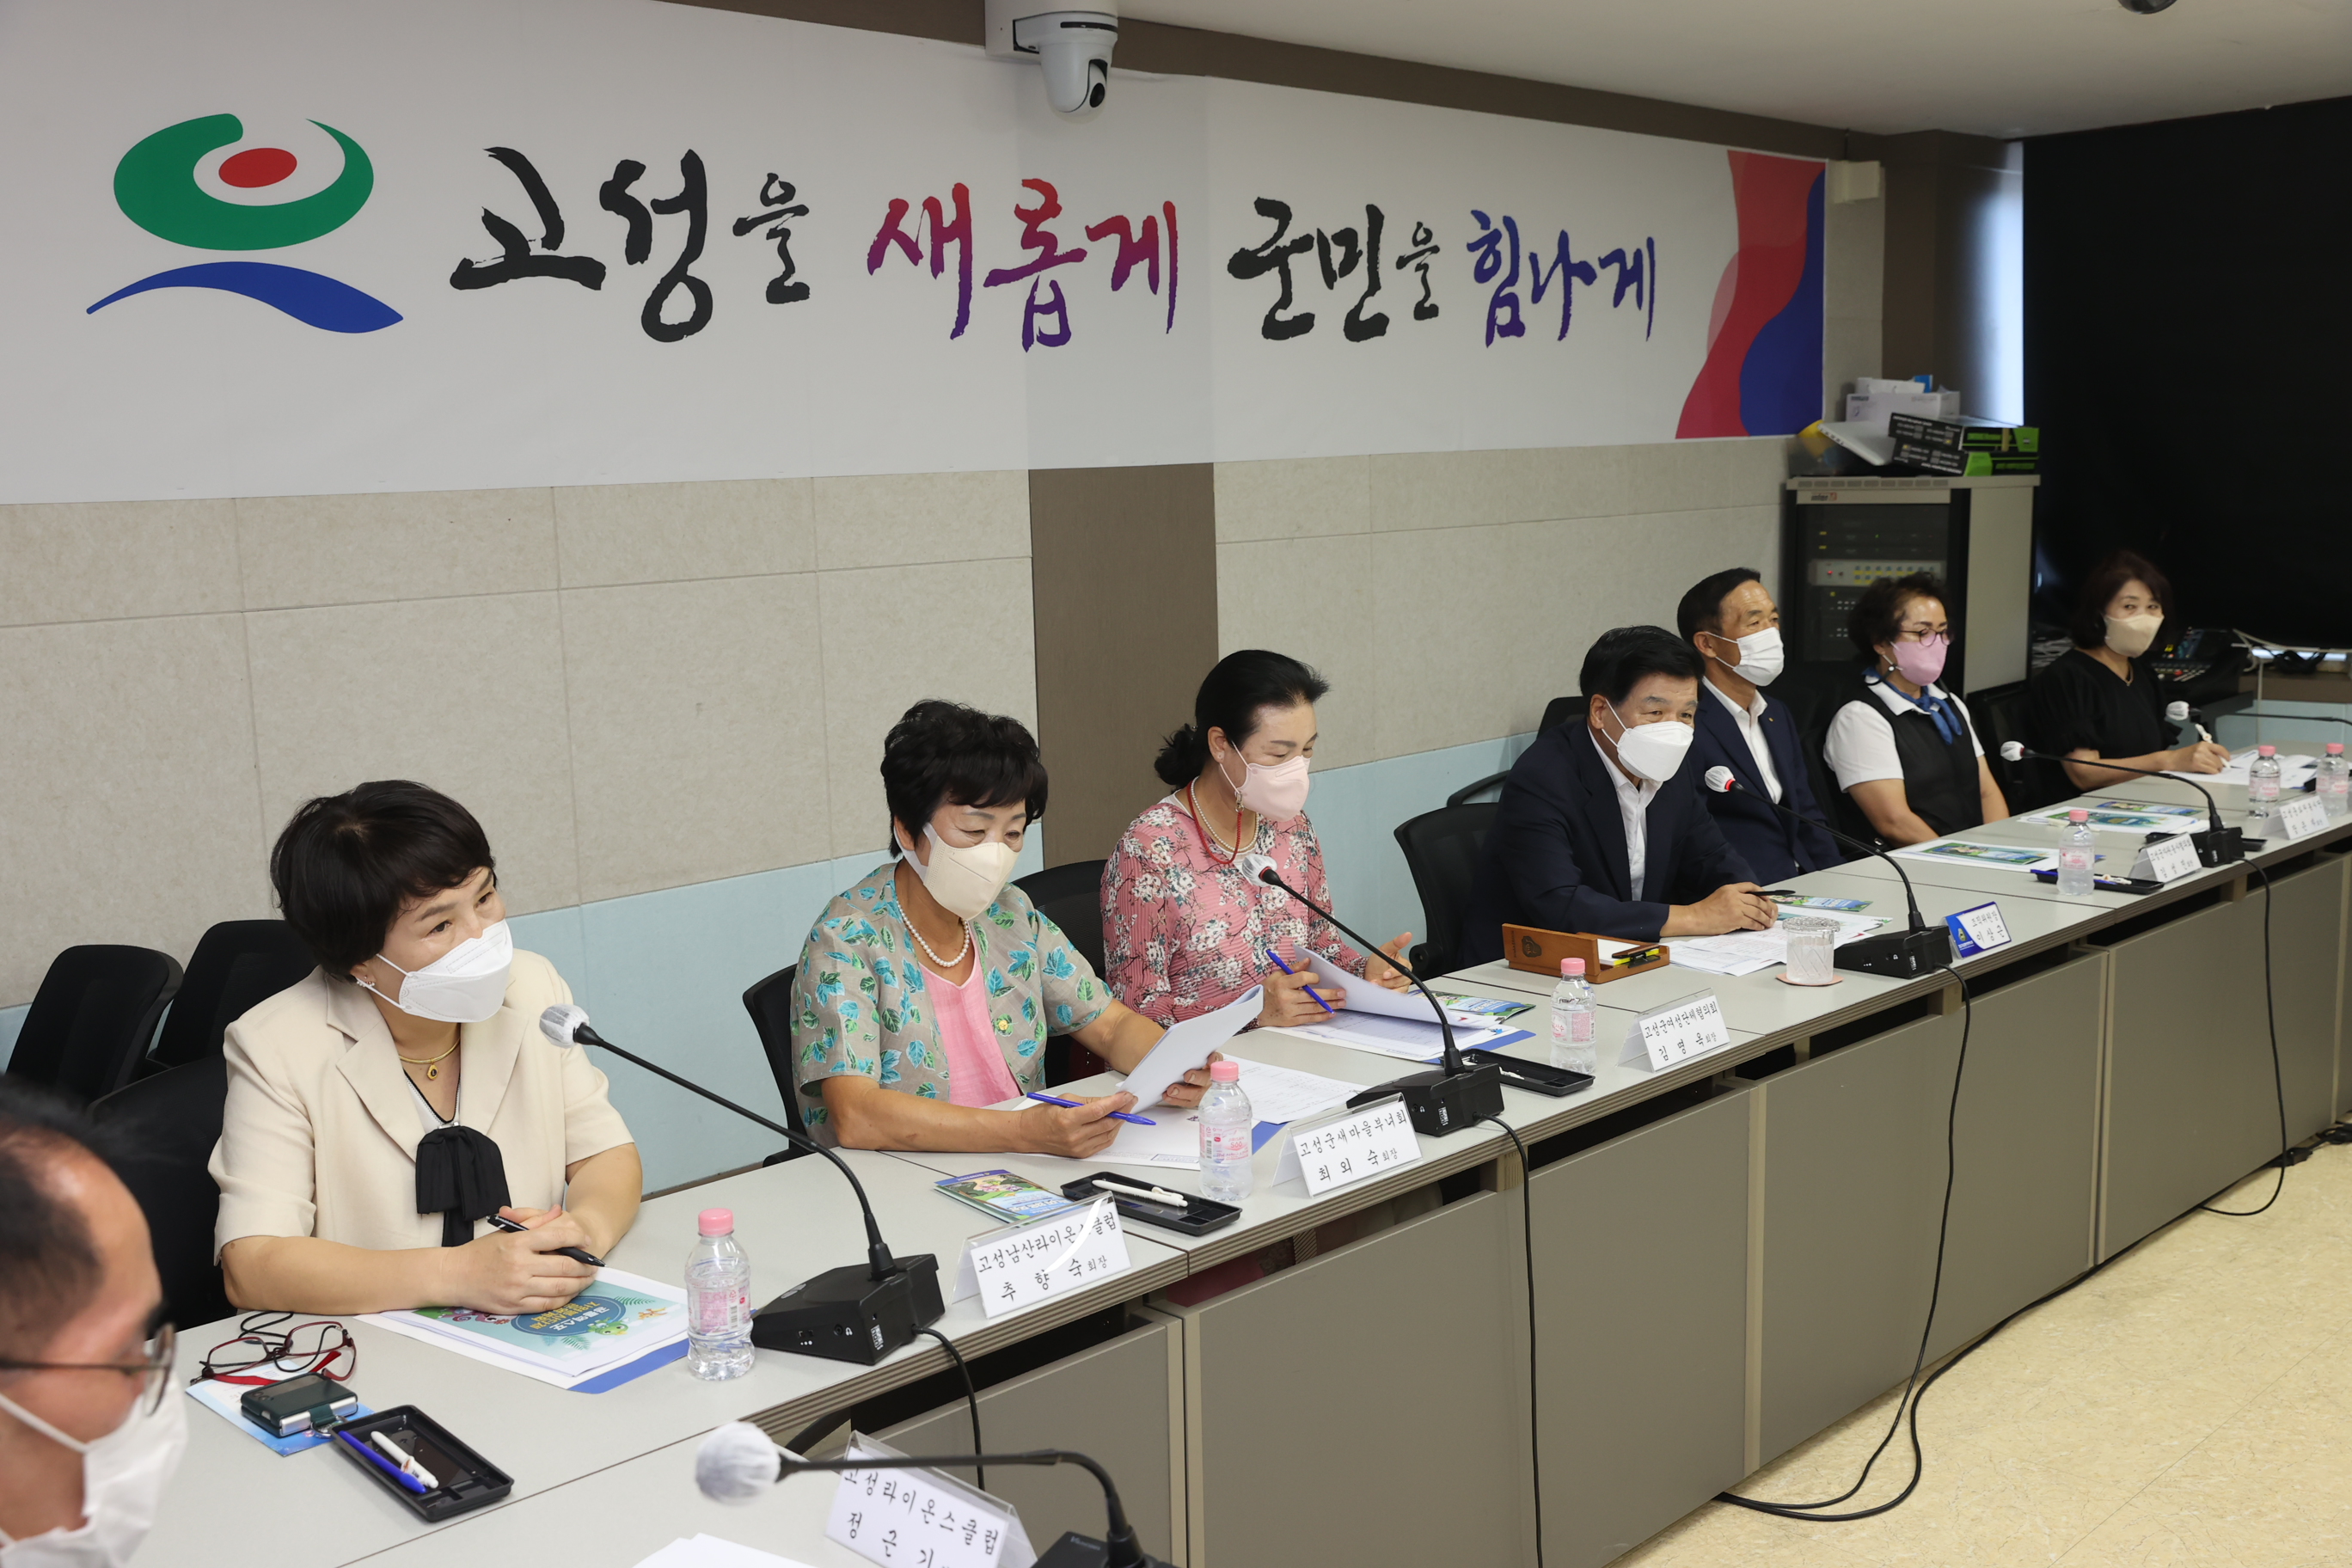 8월9일 공룡엑스포 자원봉사단체 간담회 관련자료